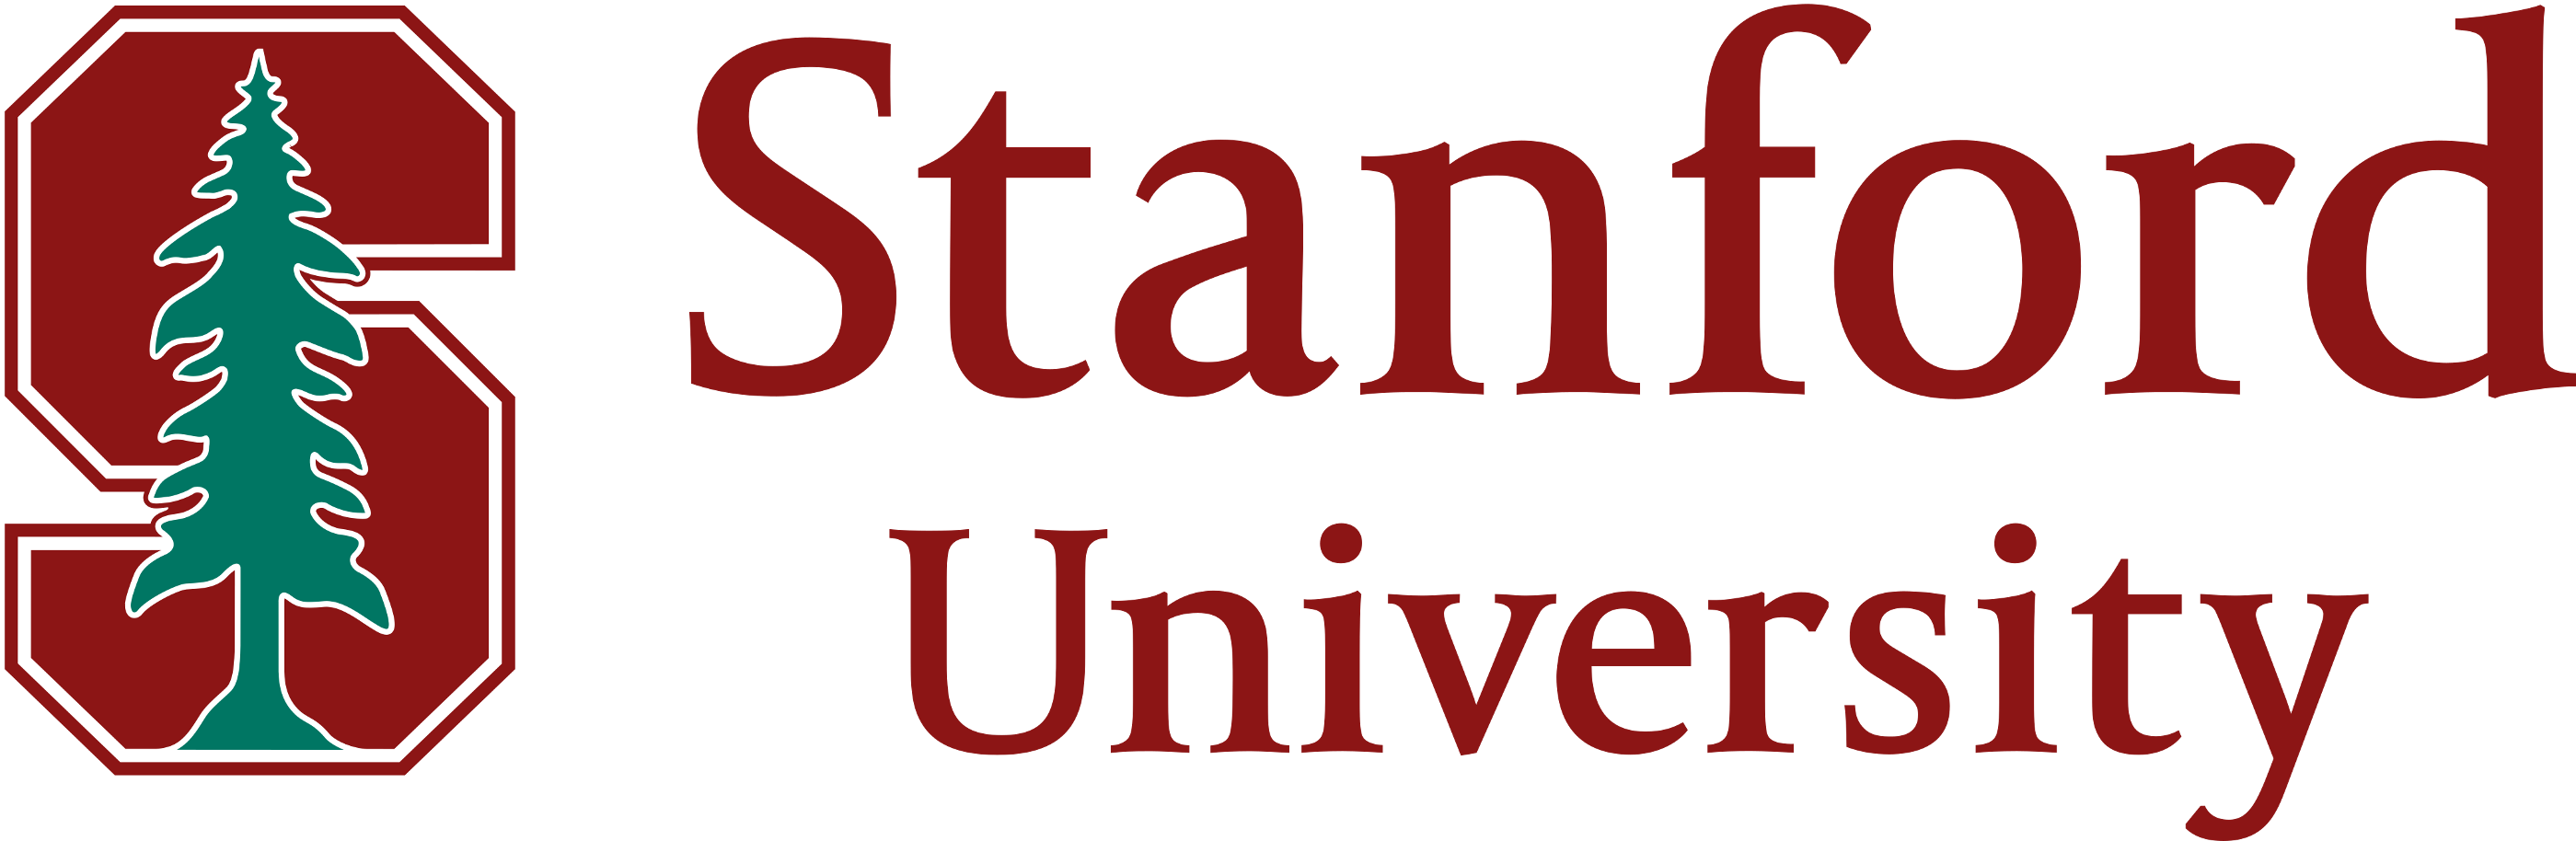 Stanford university logo